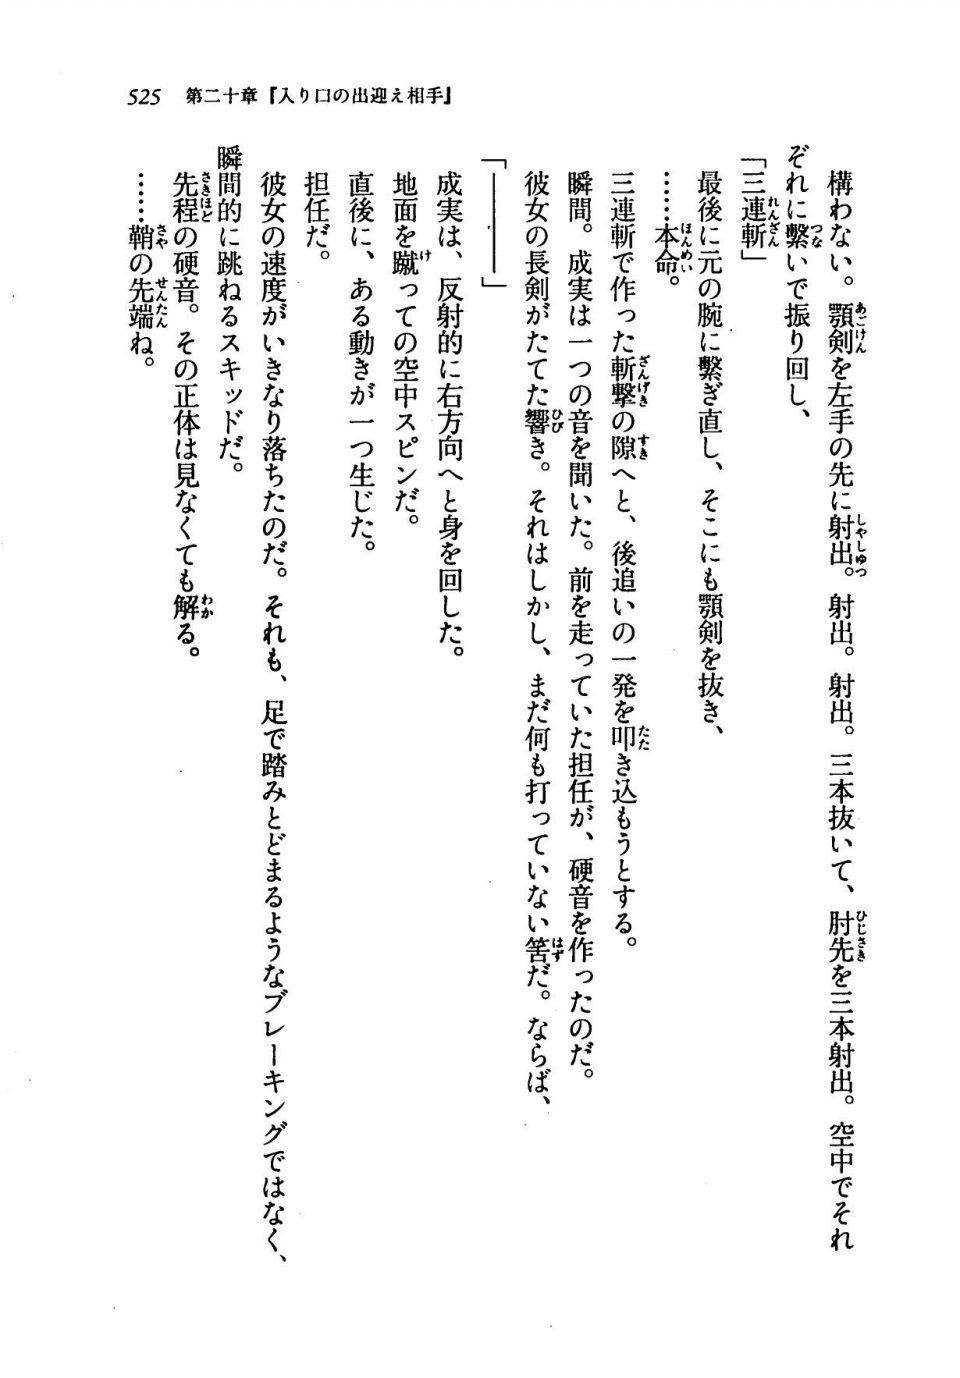 Kyoukai Senjou no Horizon LN Vol 19(8A) - Photo #525